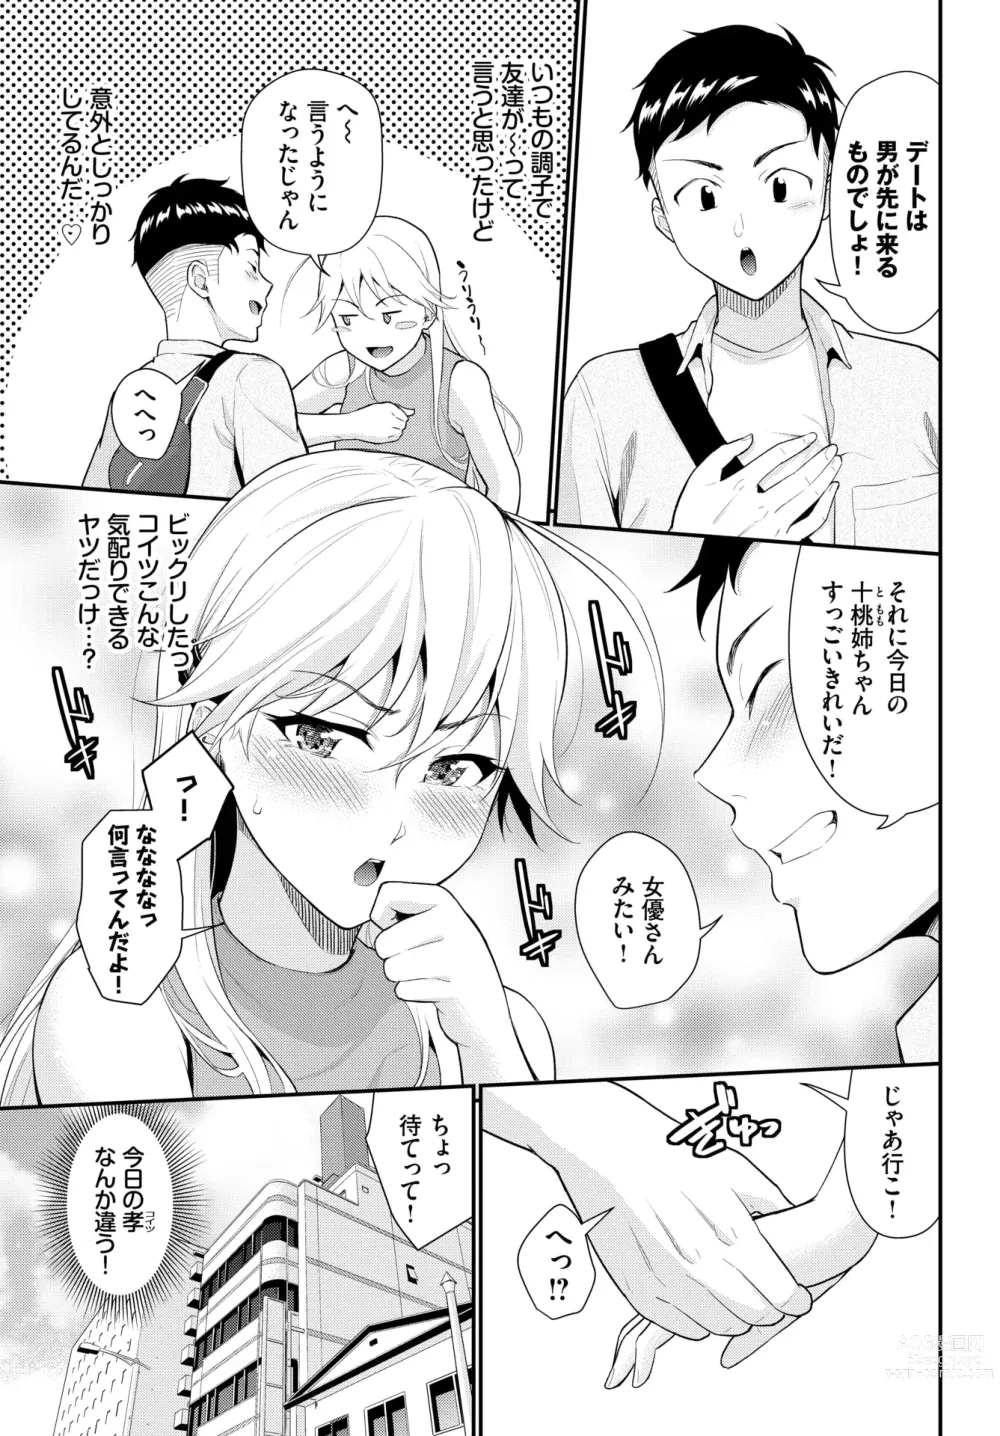 Page 3 of manga Hodad Girl